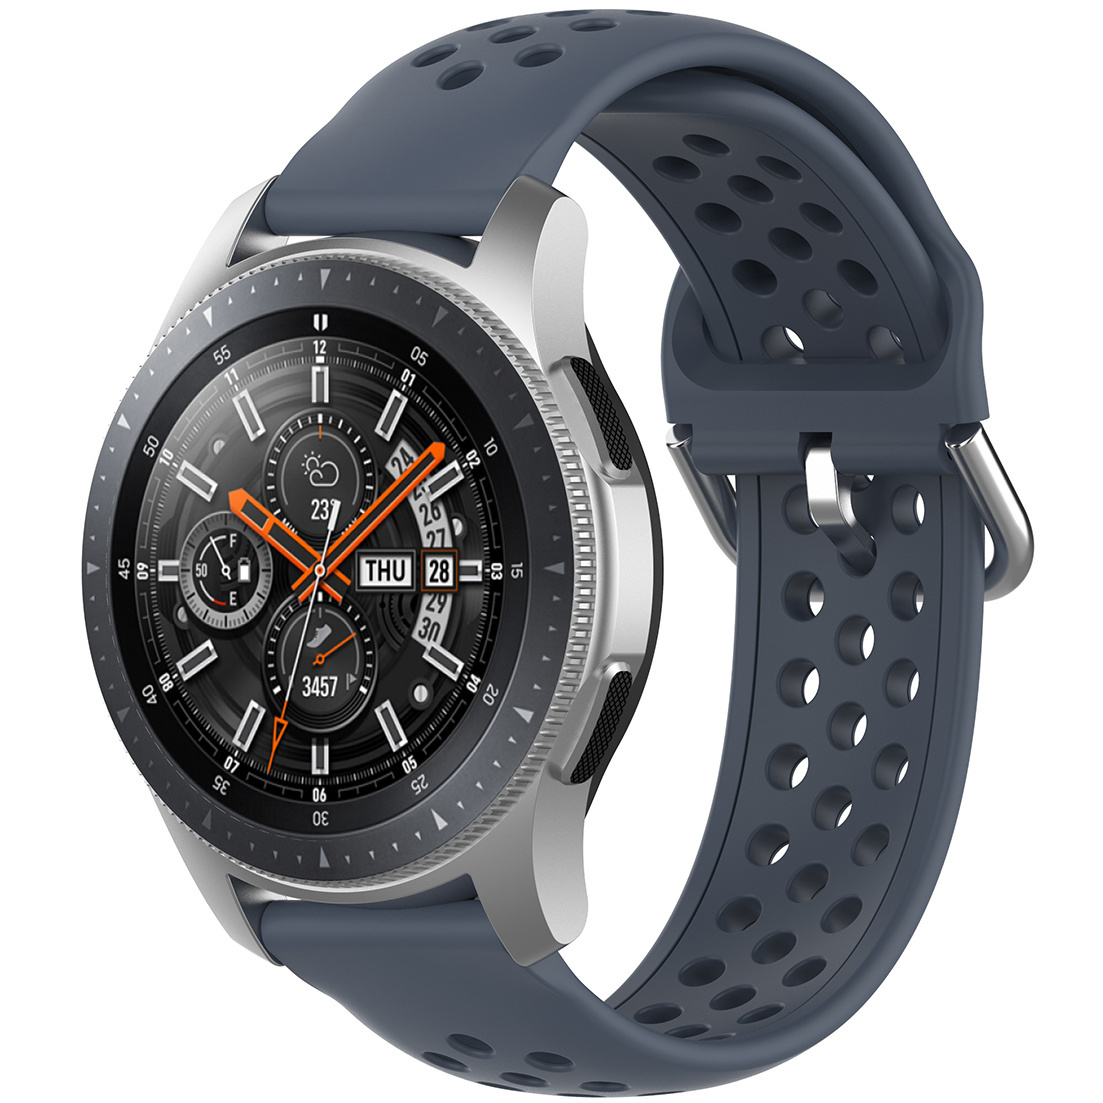 Correa deportiva doble hebilla para el Huawei Watch GT - gris